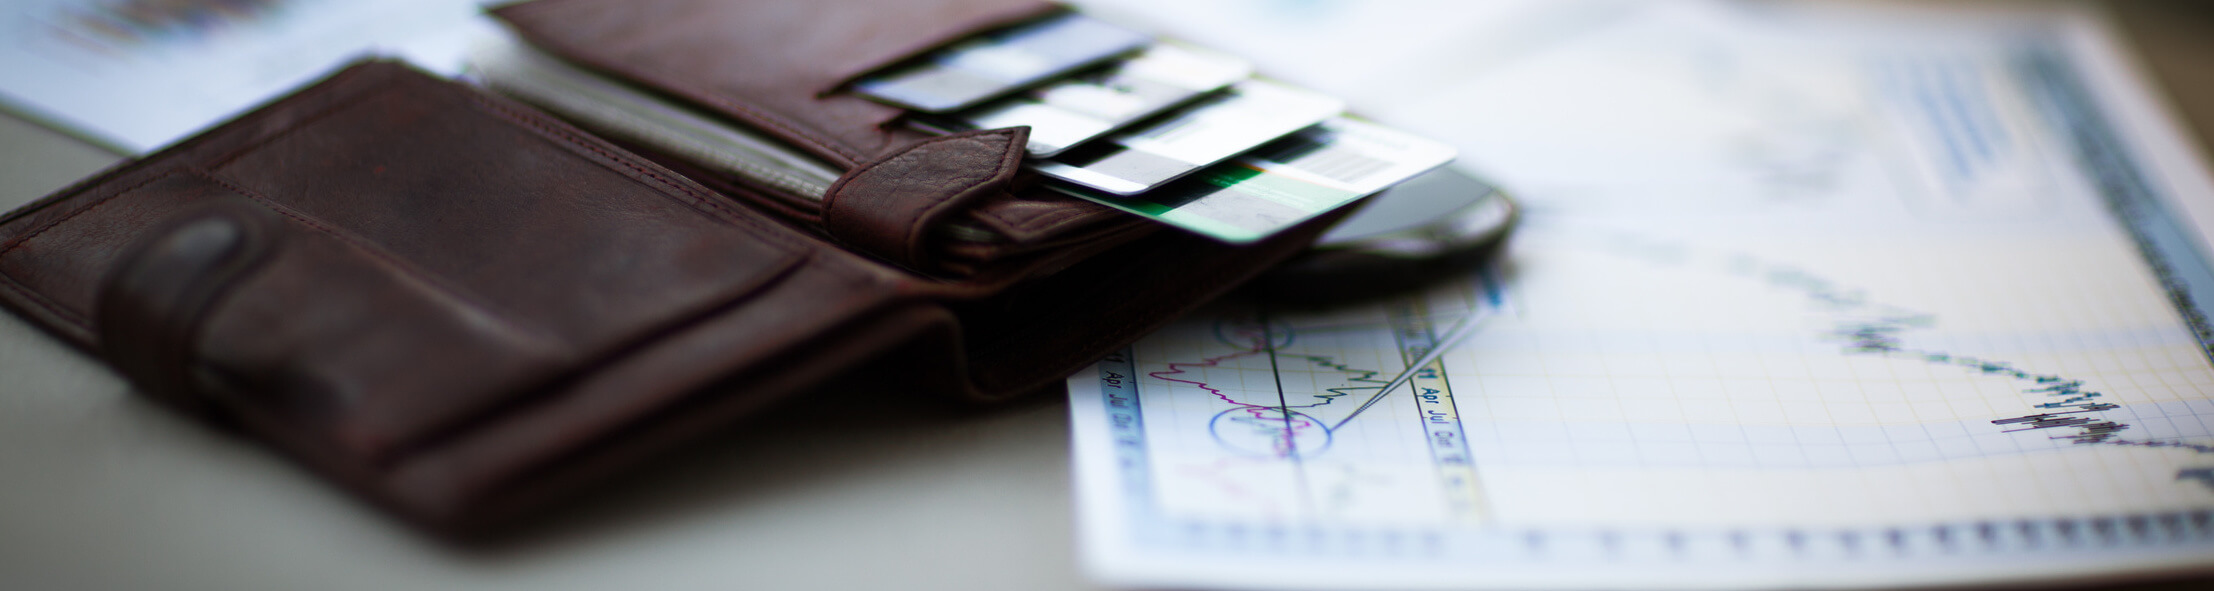 Was ist eine Debitkarte und wie funktioniert sie? || Alle Informationen in unserem Ratgeber!